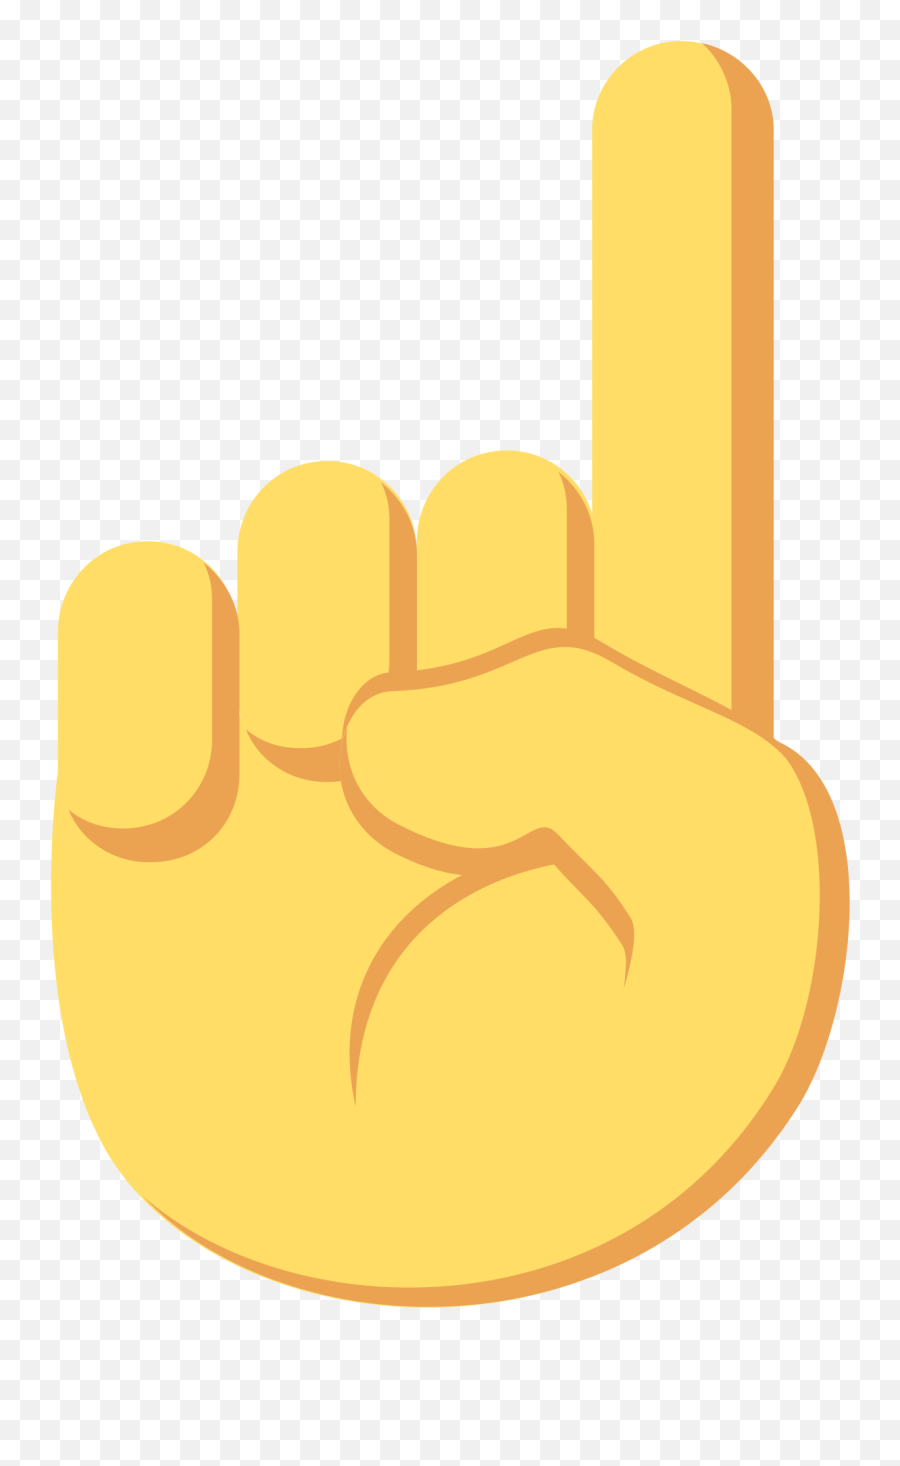 Hand Pointing Down Emoji Png Image - Emoji Seta Para Cima,Praying Hands ...